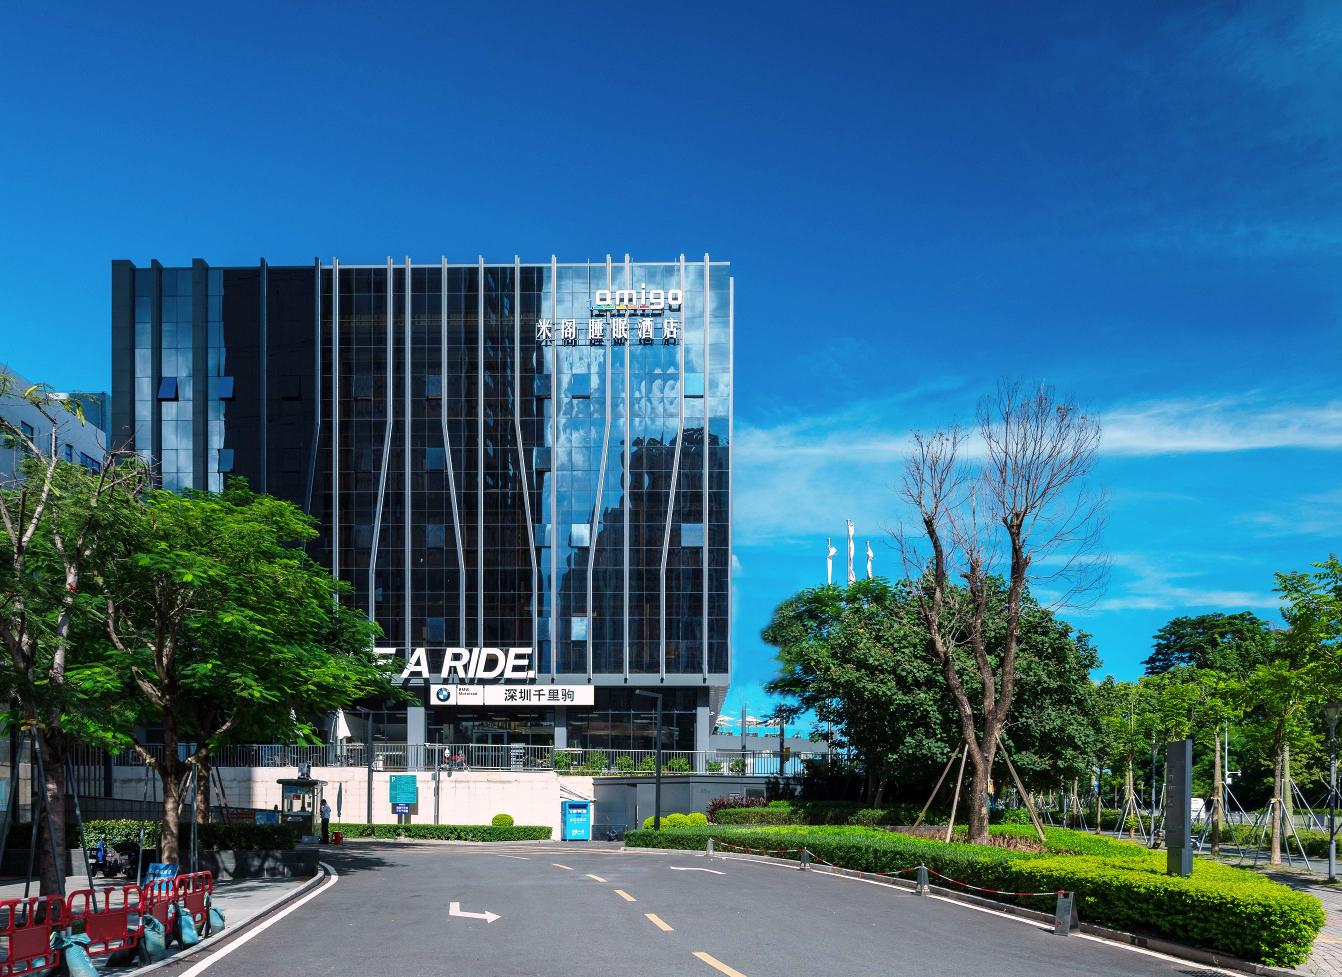 深圳商务型酒店最大容纳180人的会议场地|Amigo米阁睡眠酒店的价格与联系方式